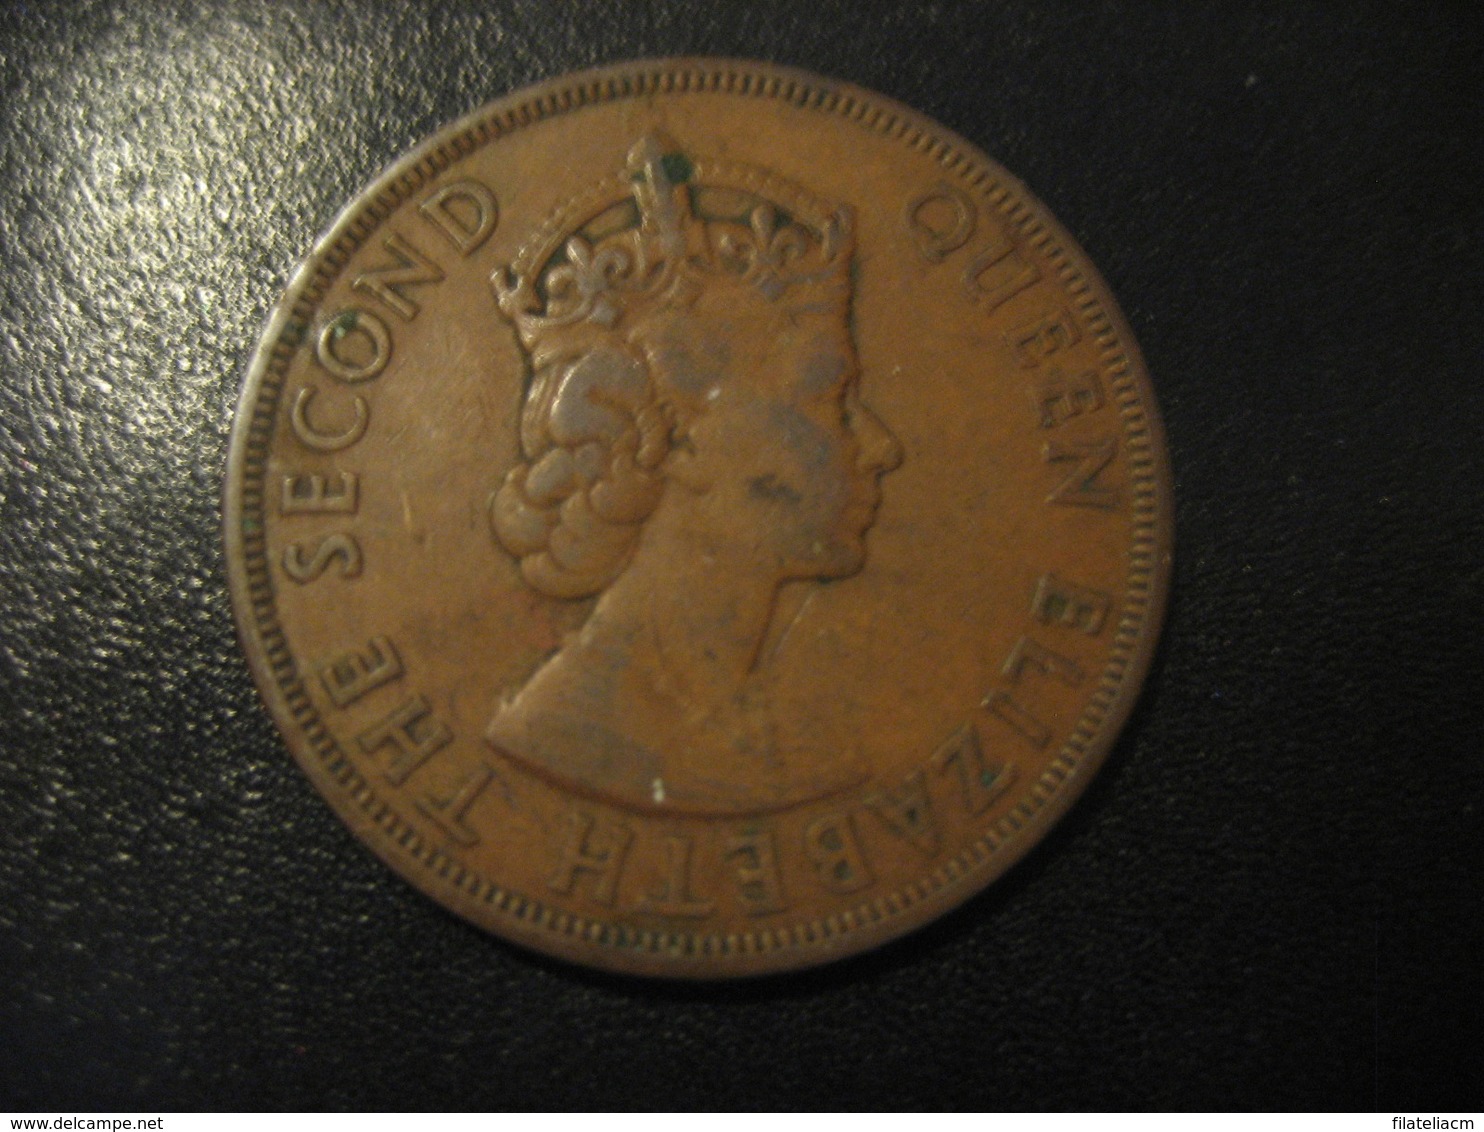 2 Cents BRITISH CARIBBEAN TERRITORIES 1955 Coin British West Indies Antillas - Antillen